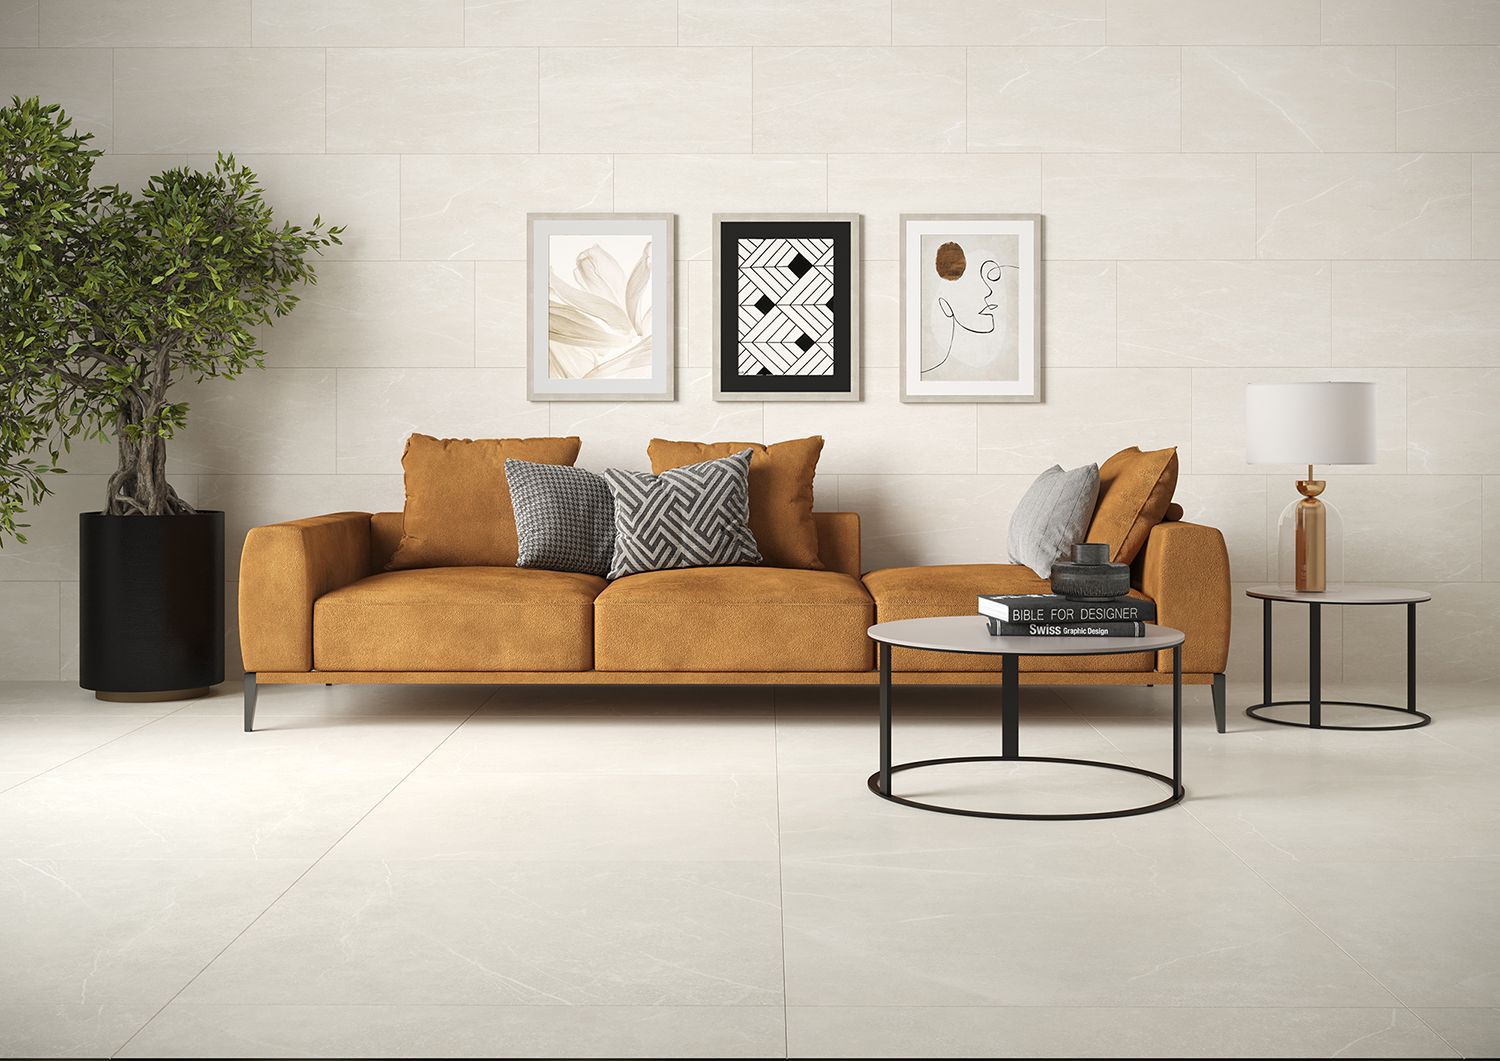 soapstone-white-matt-porcelain-floor-tile-room-image-2.jpg